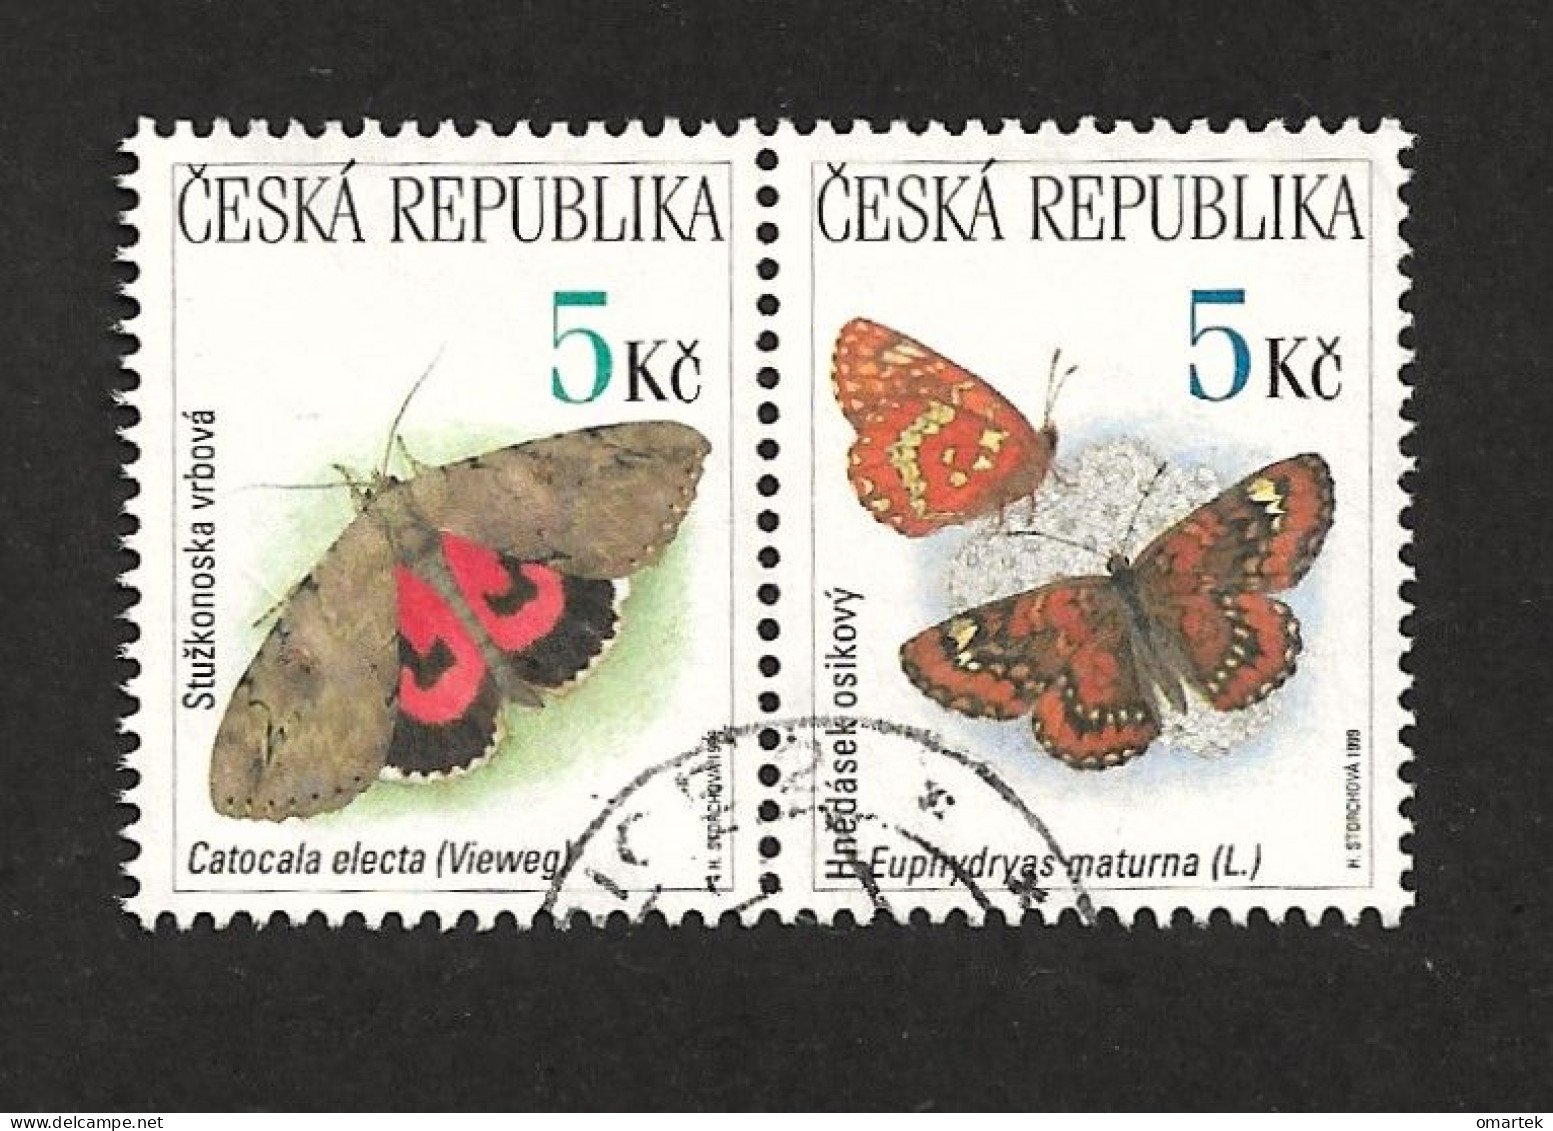 Czech Republic 1999 ⊙ Mi 209, 210 Sc 3083, 3084 Butterflies, Schmetterling. Tschechische Republik - Usati